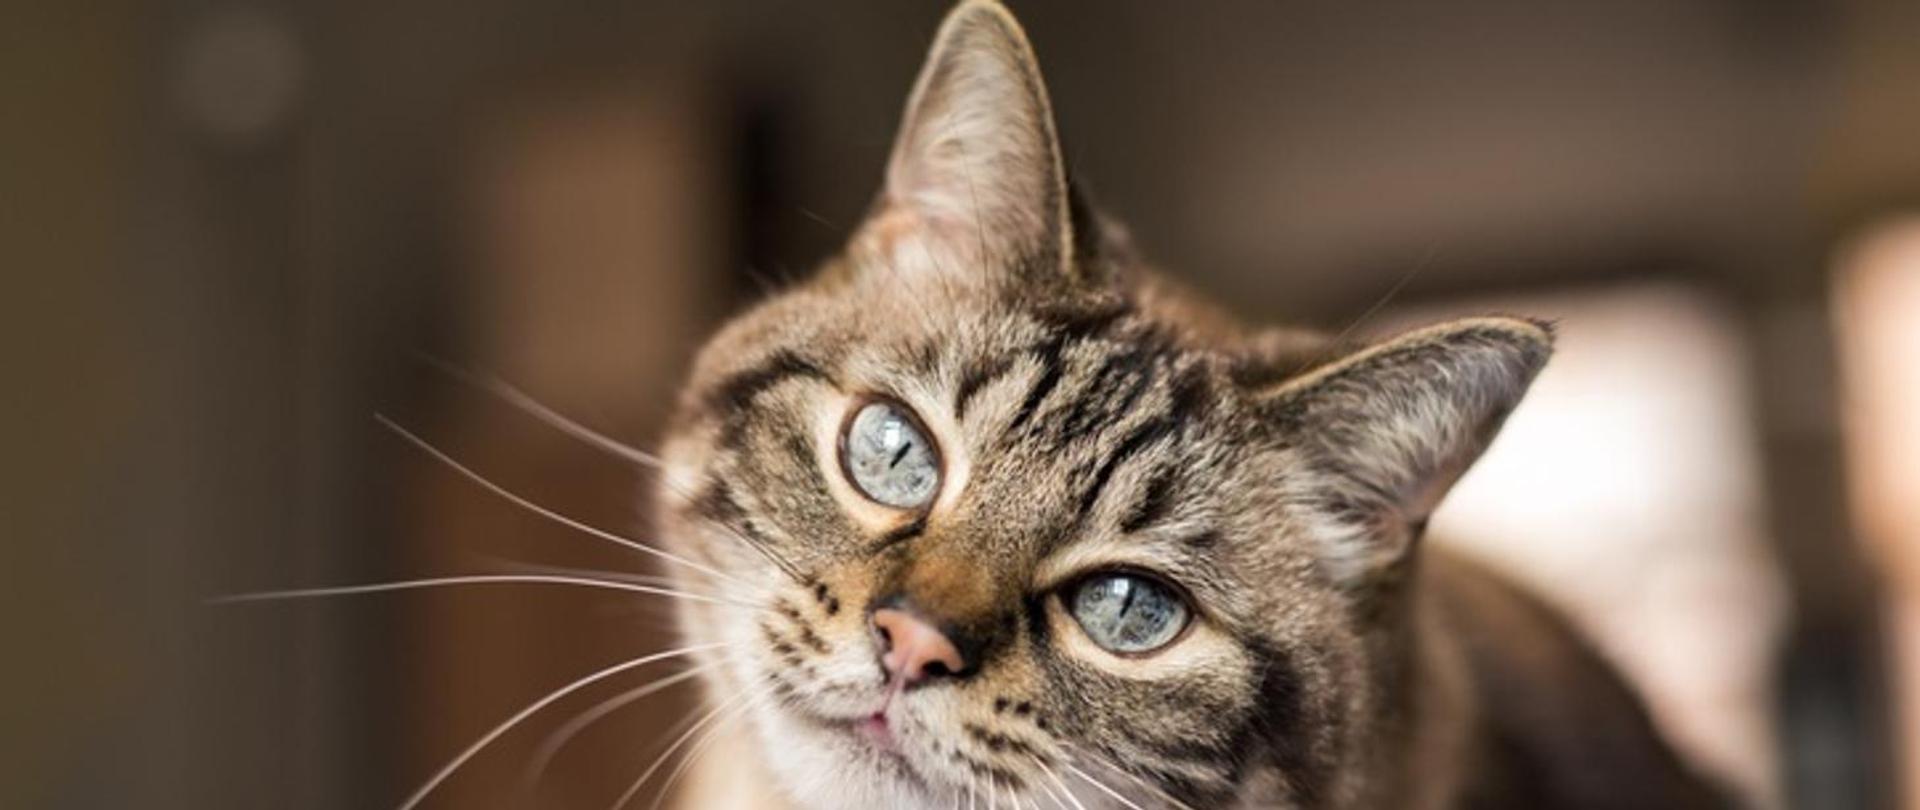 Głowa pręgowanego kota z niebieskimi oczami patrzącego przed siebie